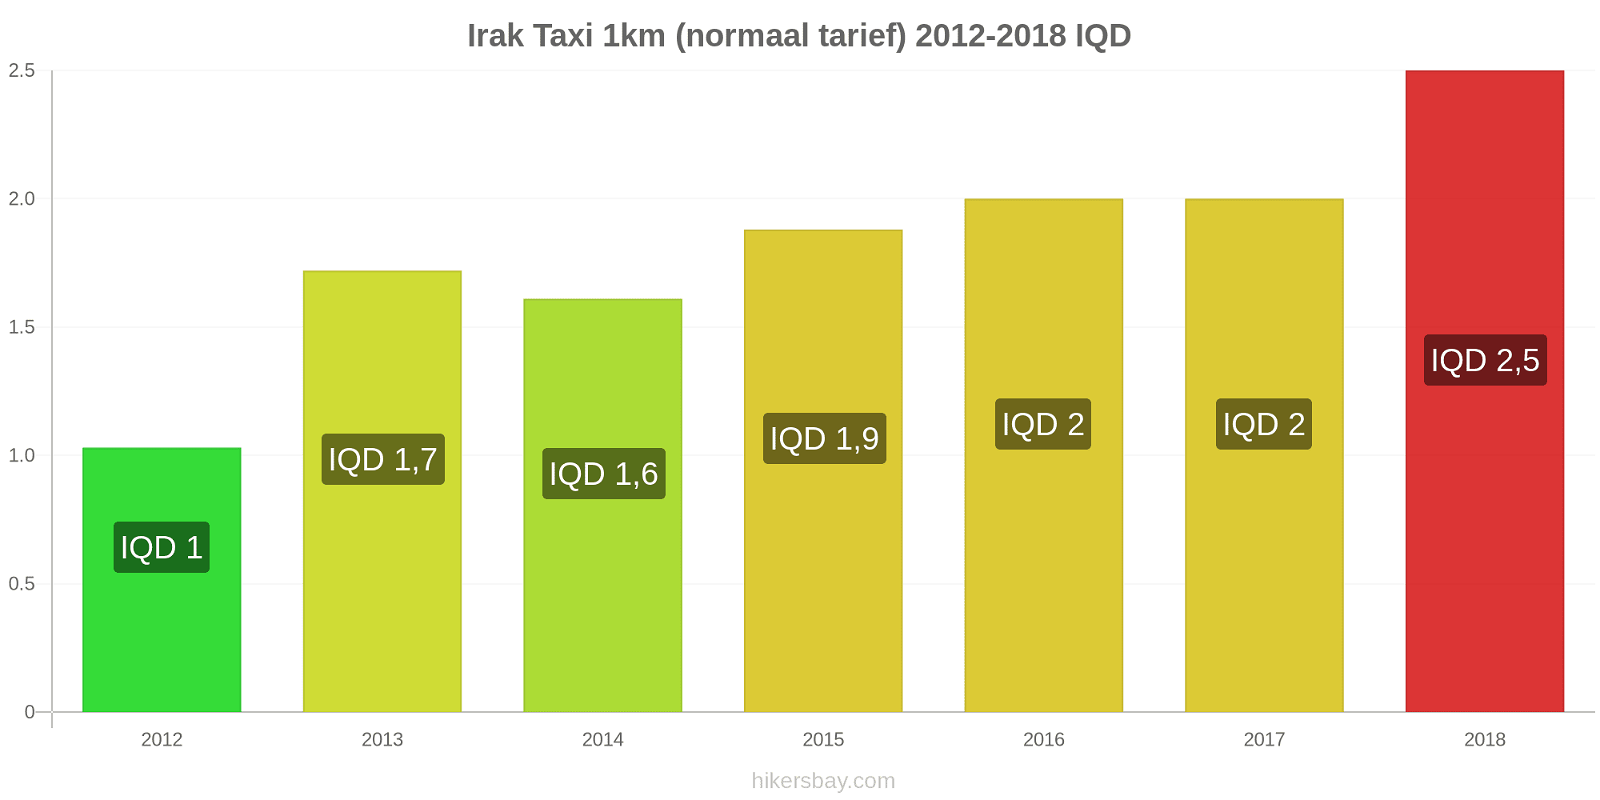 Irak prijswijzigingen Taxi 1km (normaal tarief) hikersbay.com